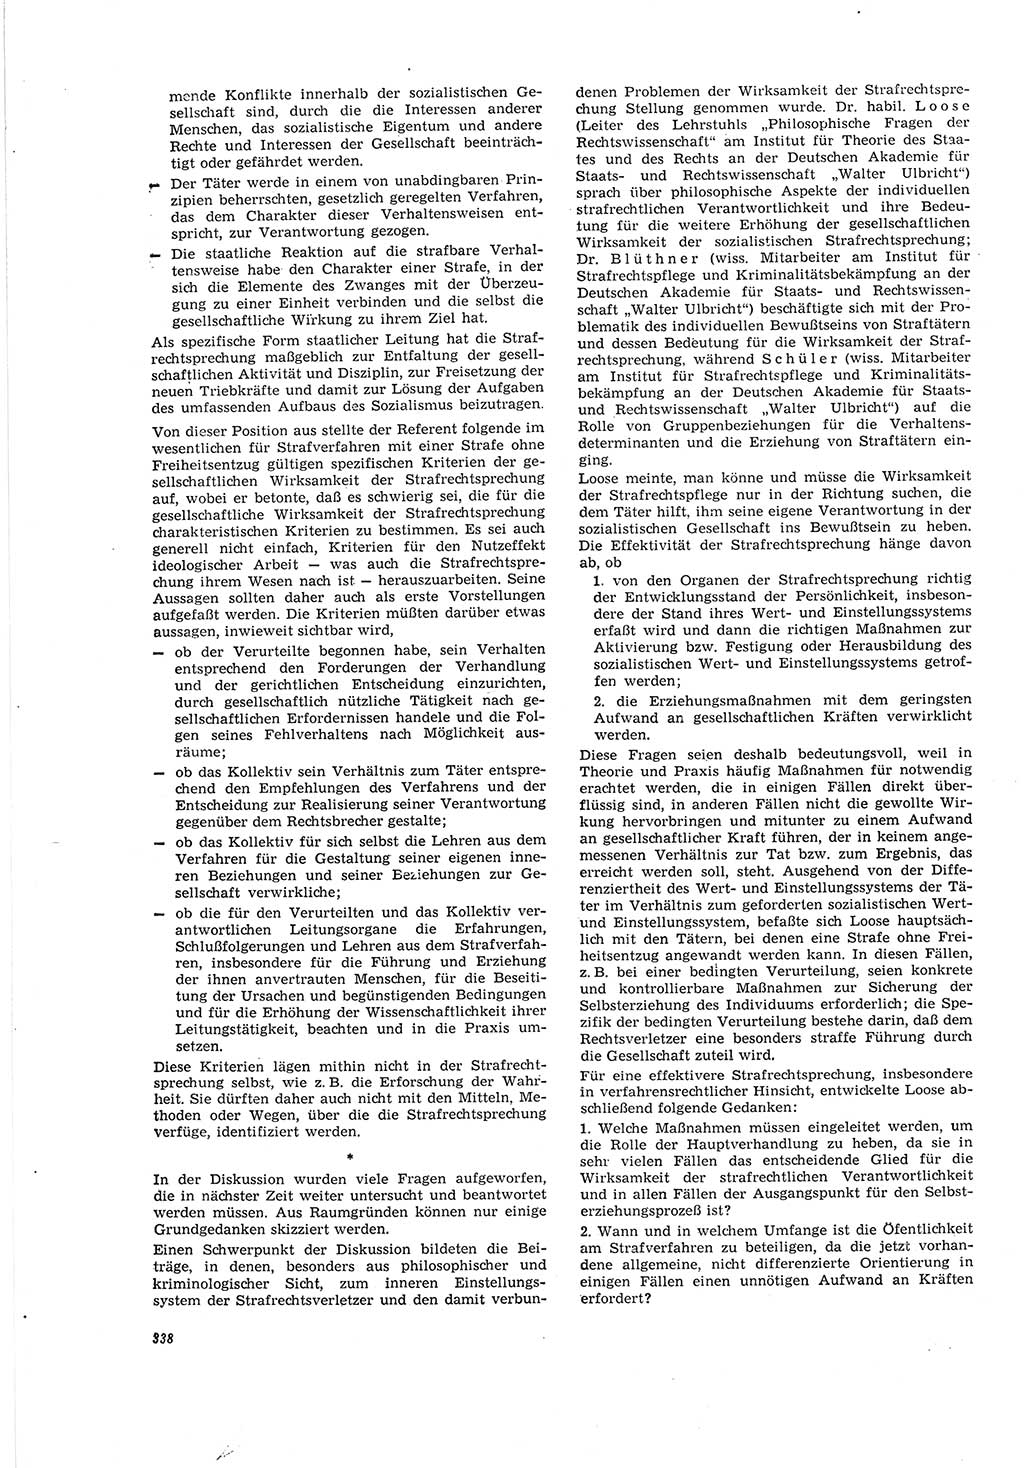 Neue Justiz (NJ), Zeitschrift für Recht und Rechtswissenschaft [Deutsche Demokratische Republik (DDR)], 20. Jahrgang 1966, Seite 338 (NJ DDR 1966, S. 338)